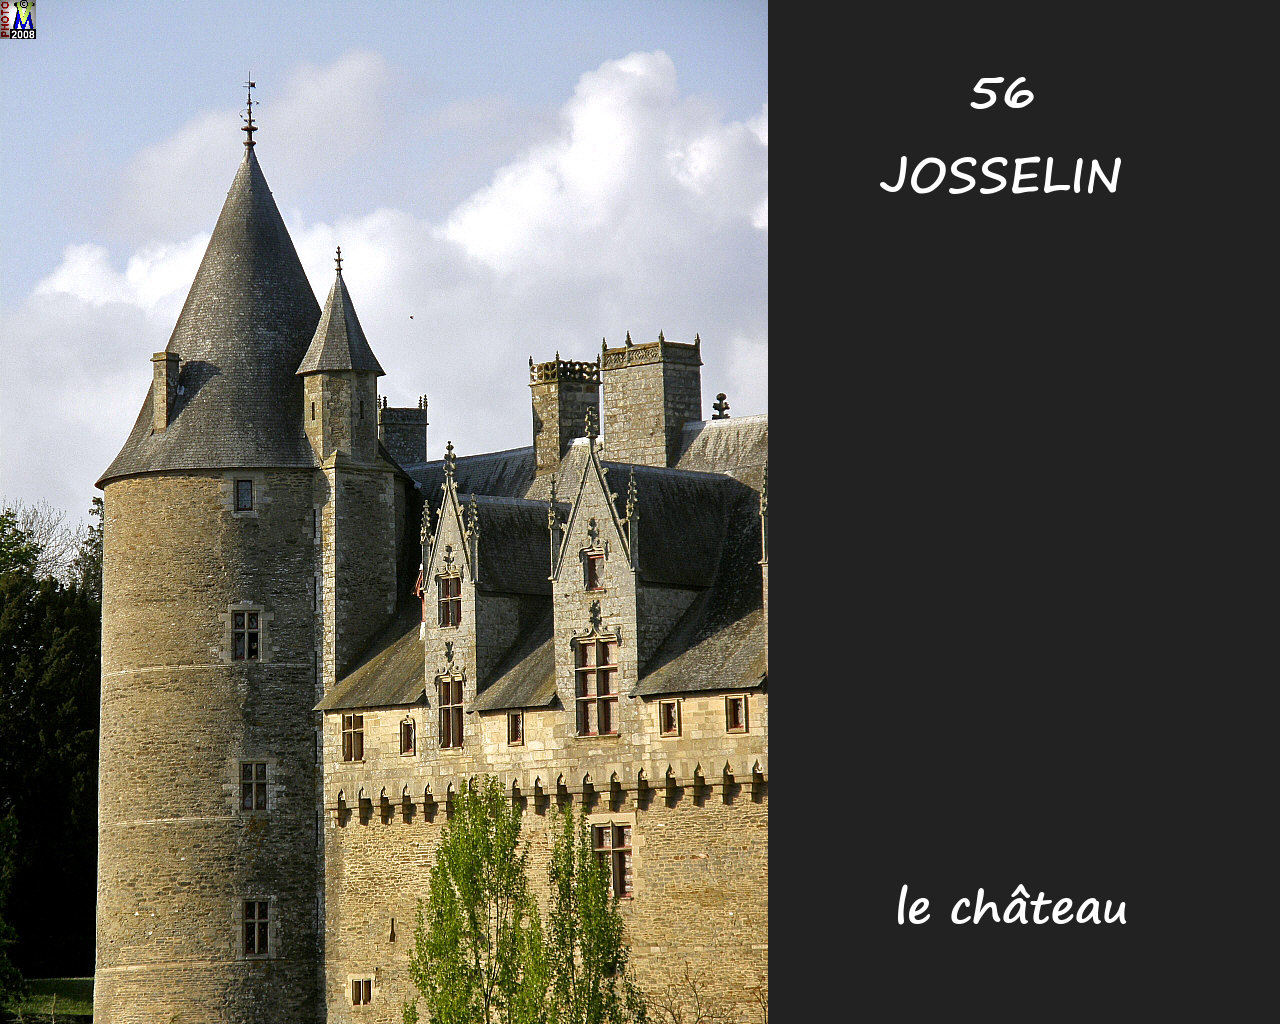 56JOSSELIN_chateau_120.jpg